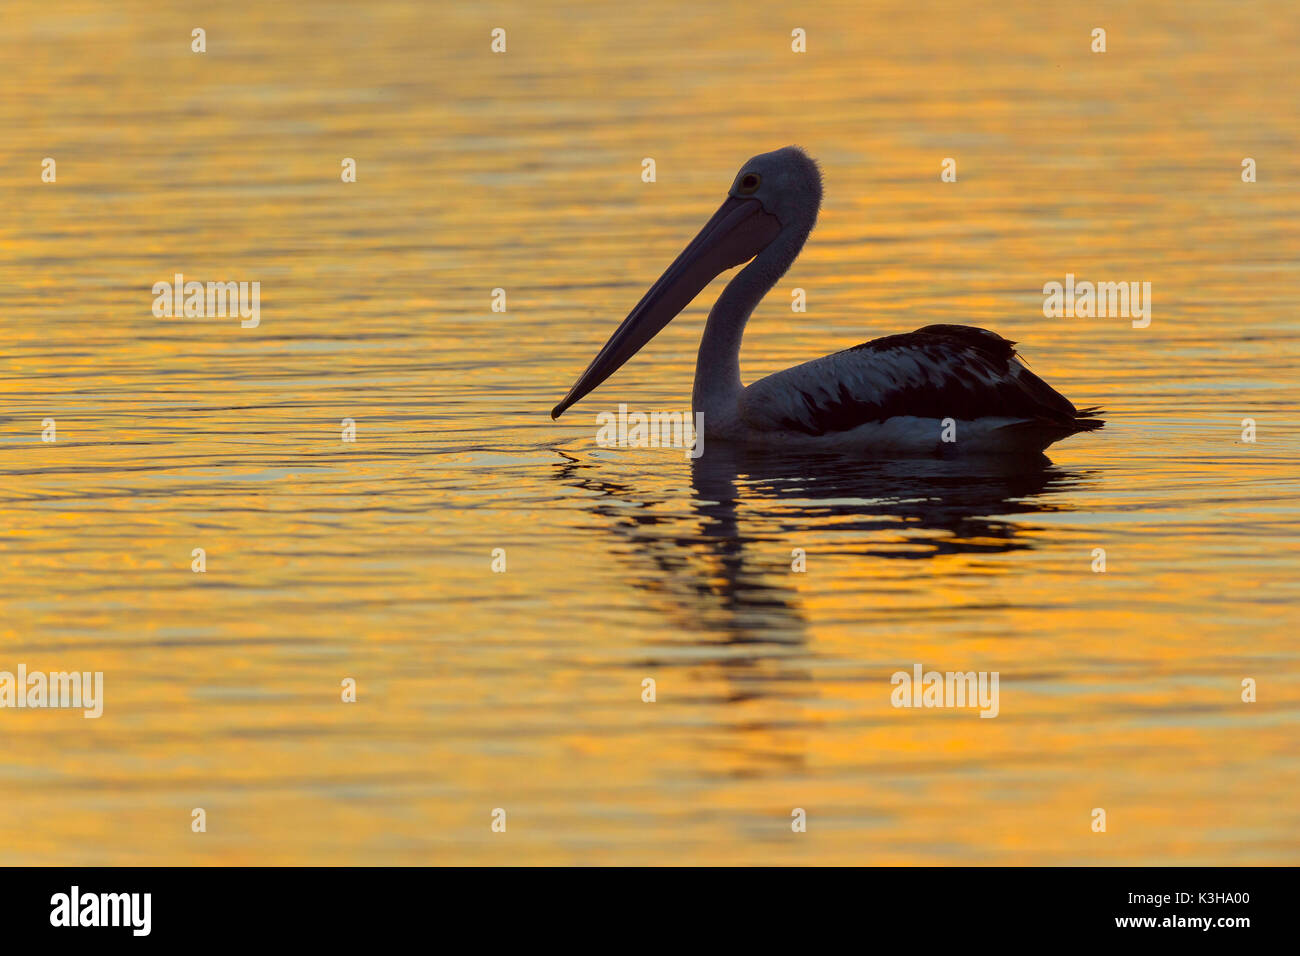 Australian Pelican, Pelecanus conspicillatus, at Sunset, Rockhampton, Queensland, Australia Stock Photo